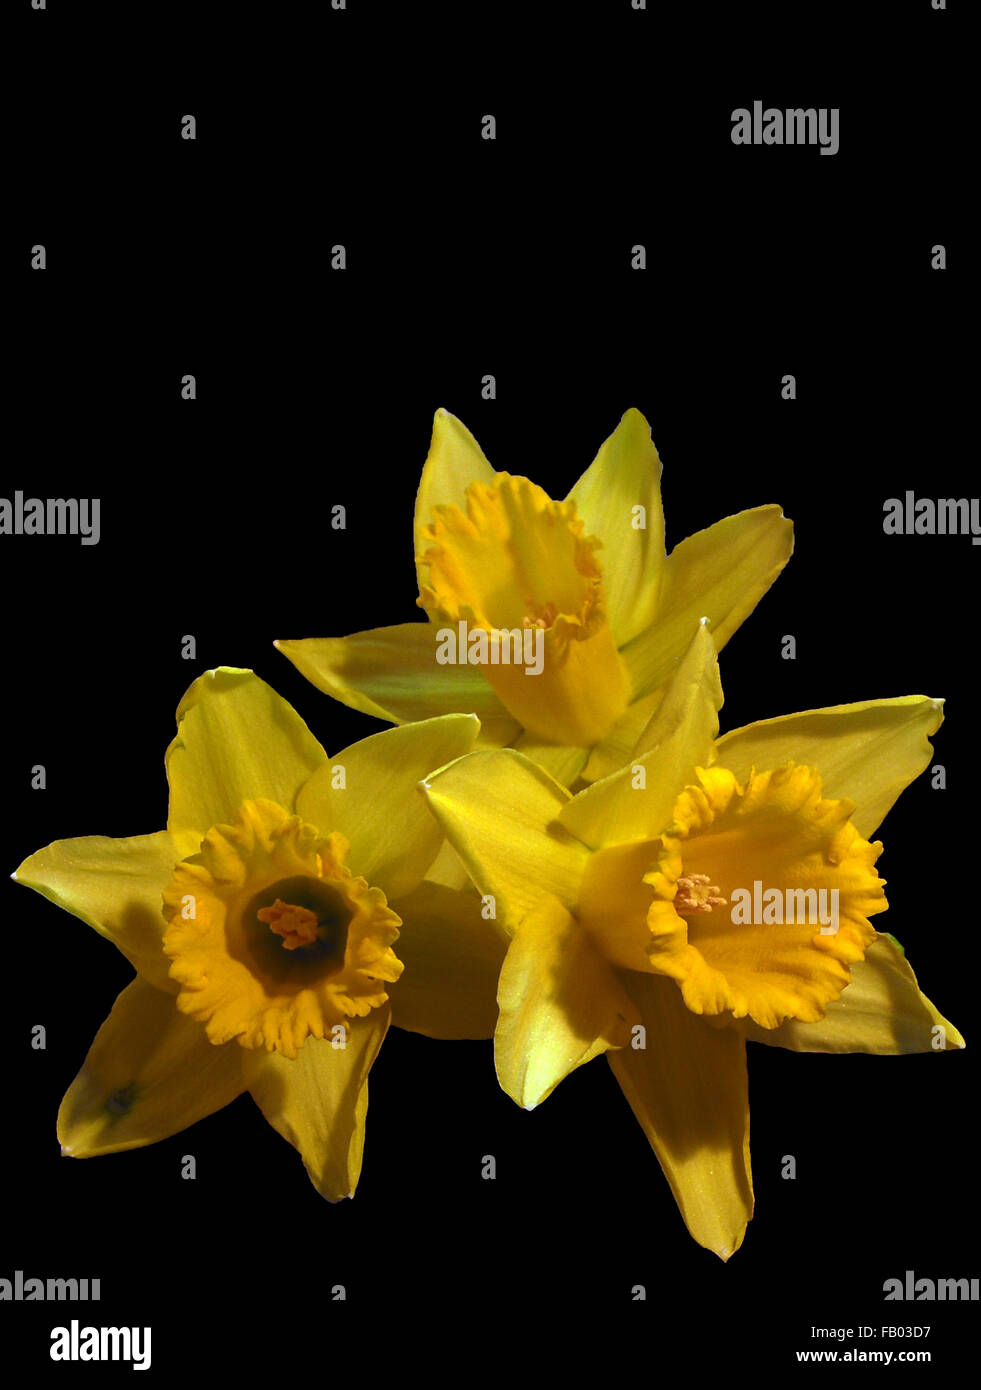 Daffodil,narcisi,fiori gialli, molla ,fiori di primavera,mazzo di fiori,bouguet di fiori su sfondo nero Foto Stock